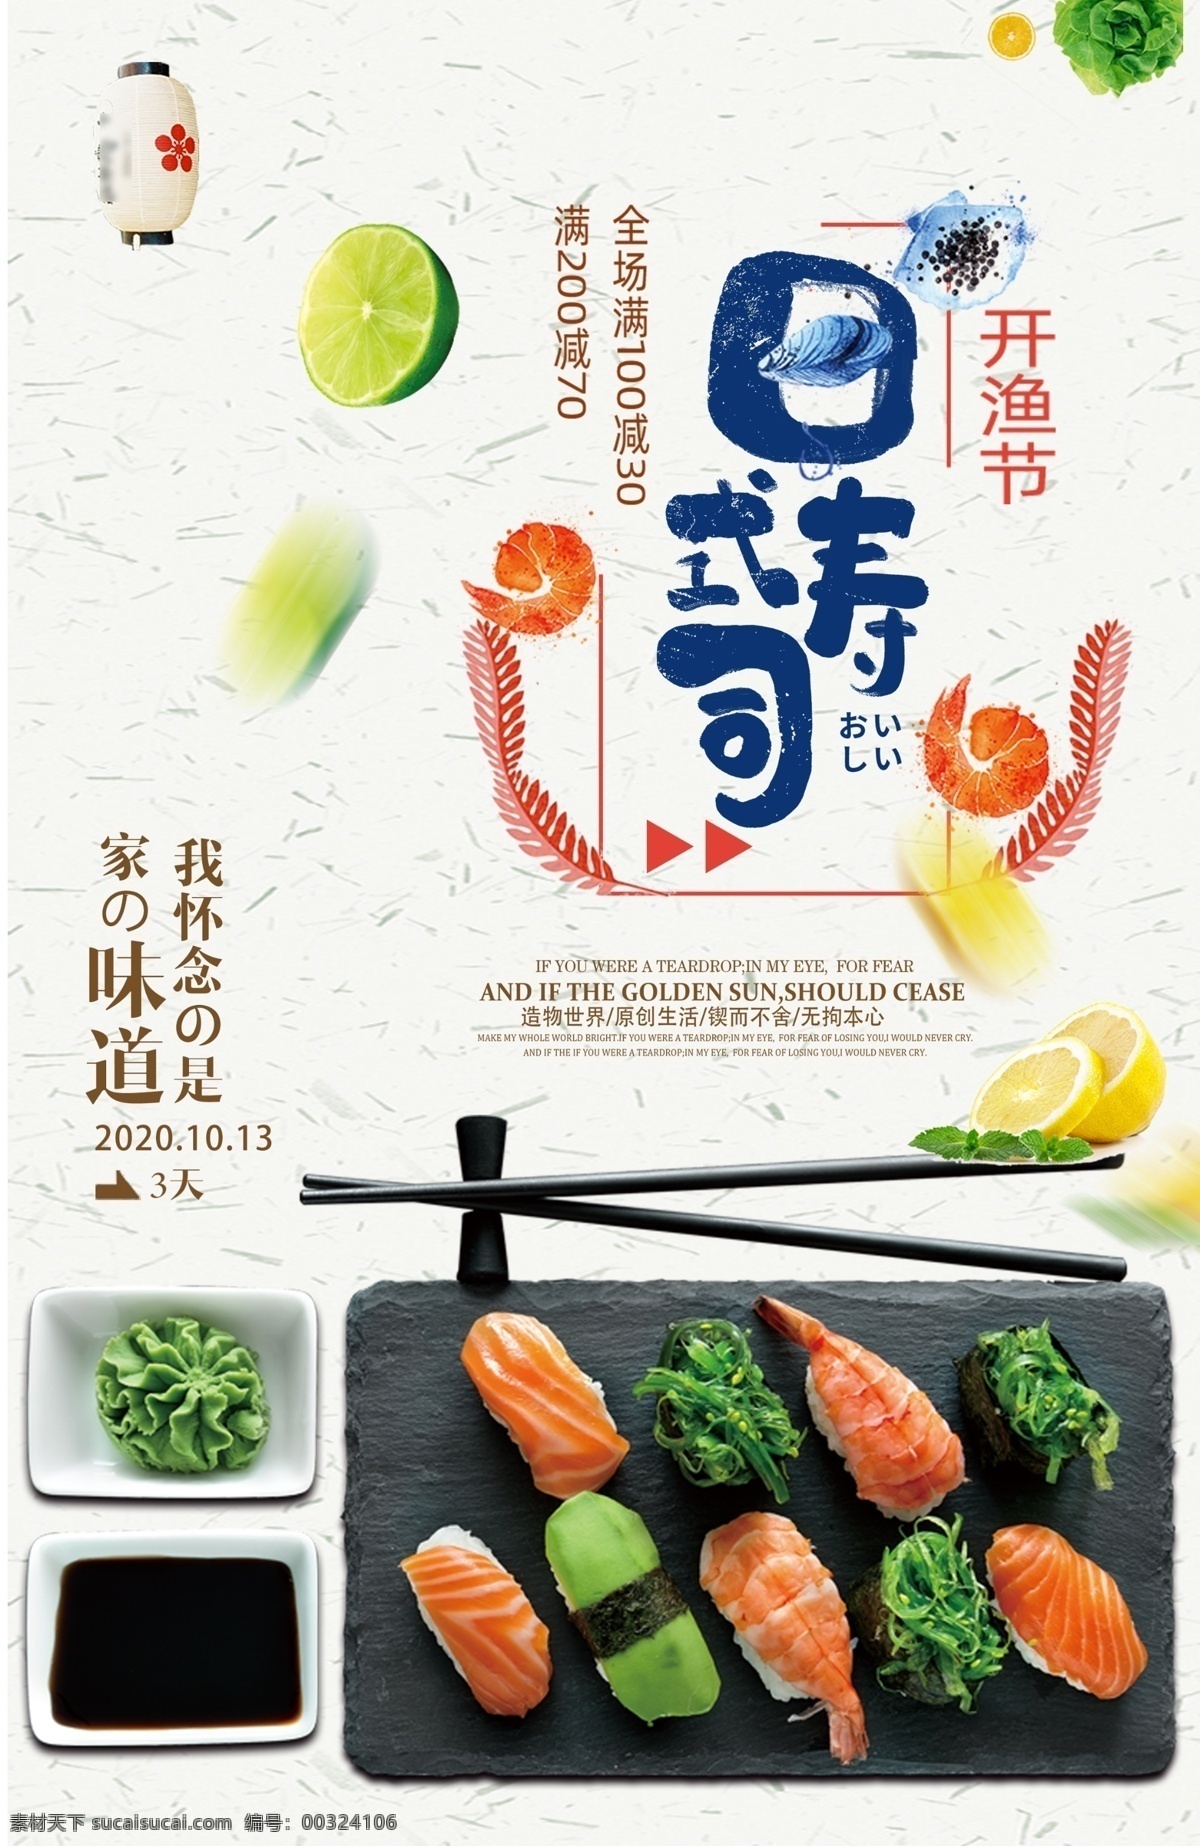 寿司海报 日本料理 寿司 芥末 辣椒 酱油 柠檬 日本料理海报 还是背景 分层图 青柠檬 黄柠檬 美食